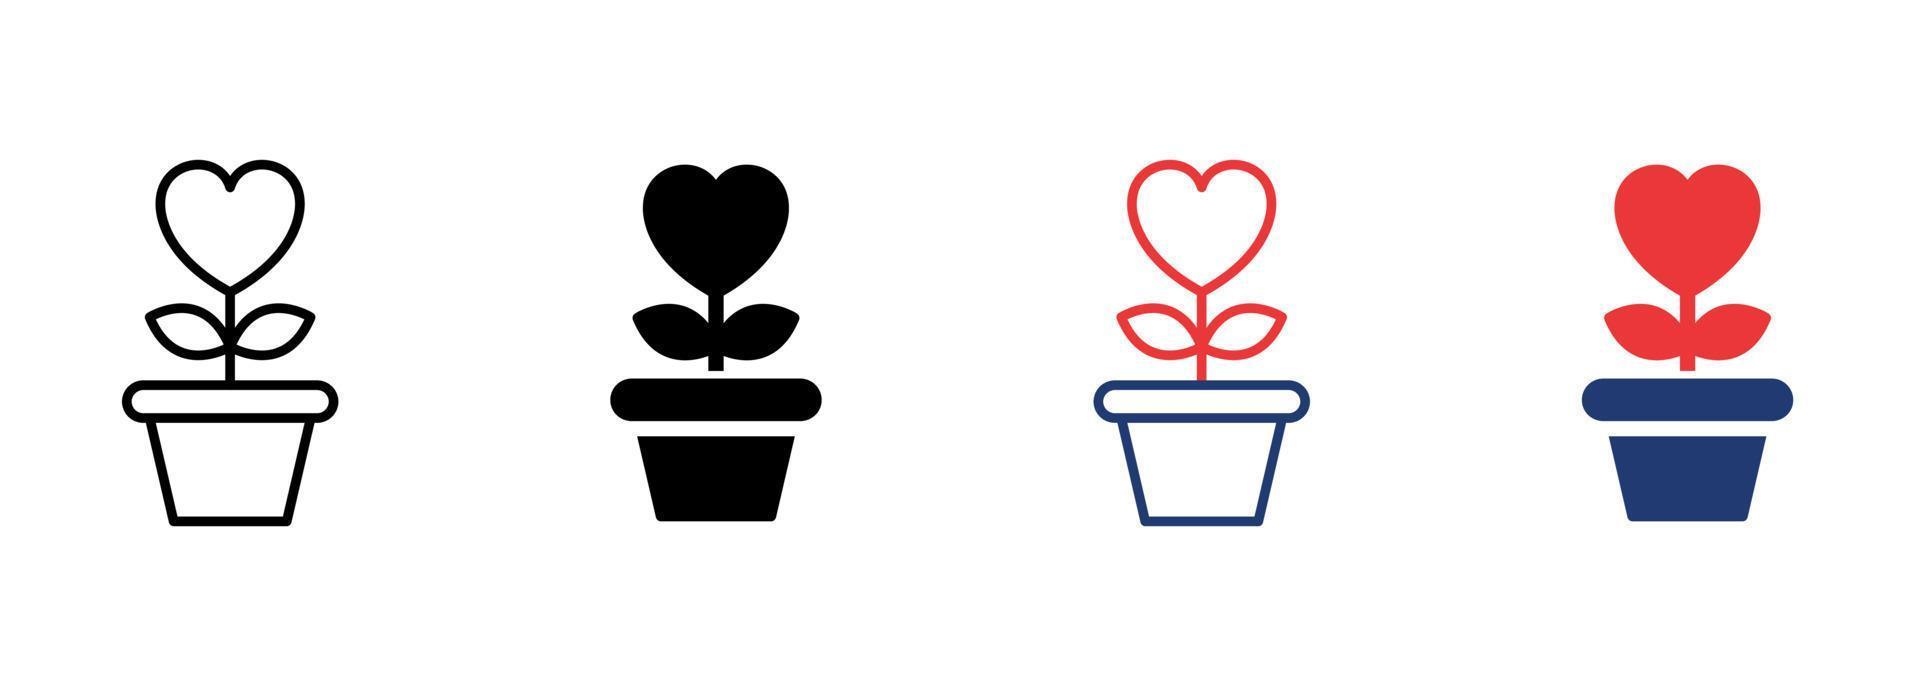 fleur en forme de coeur en pot avec l'icône de la feuille. pictogramme de symbole de charité, d'amour et de romance. plante fleurie pousse dans l'icône du pot de fleurs. trait modifiable. illustration vectorielle isolée. vecteur